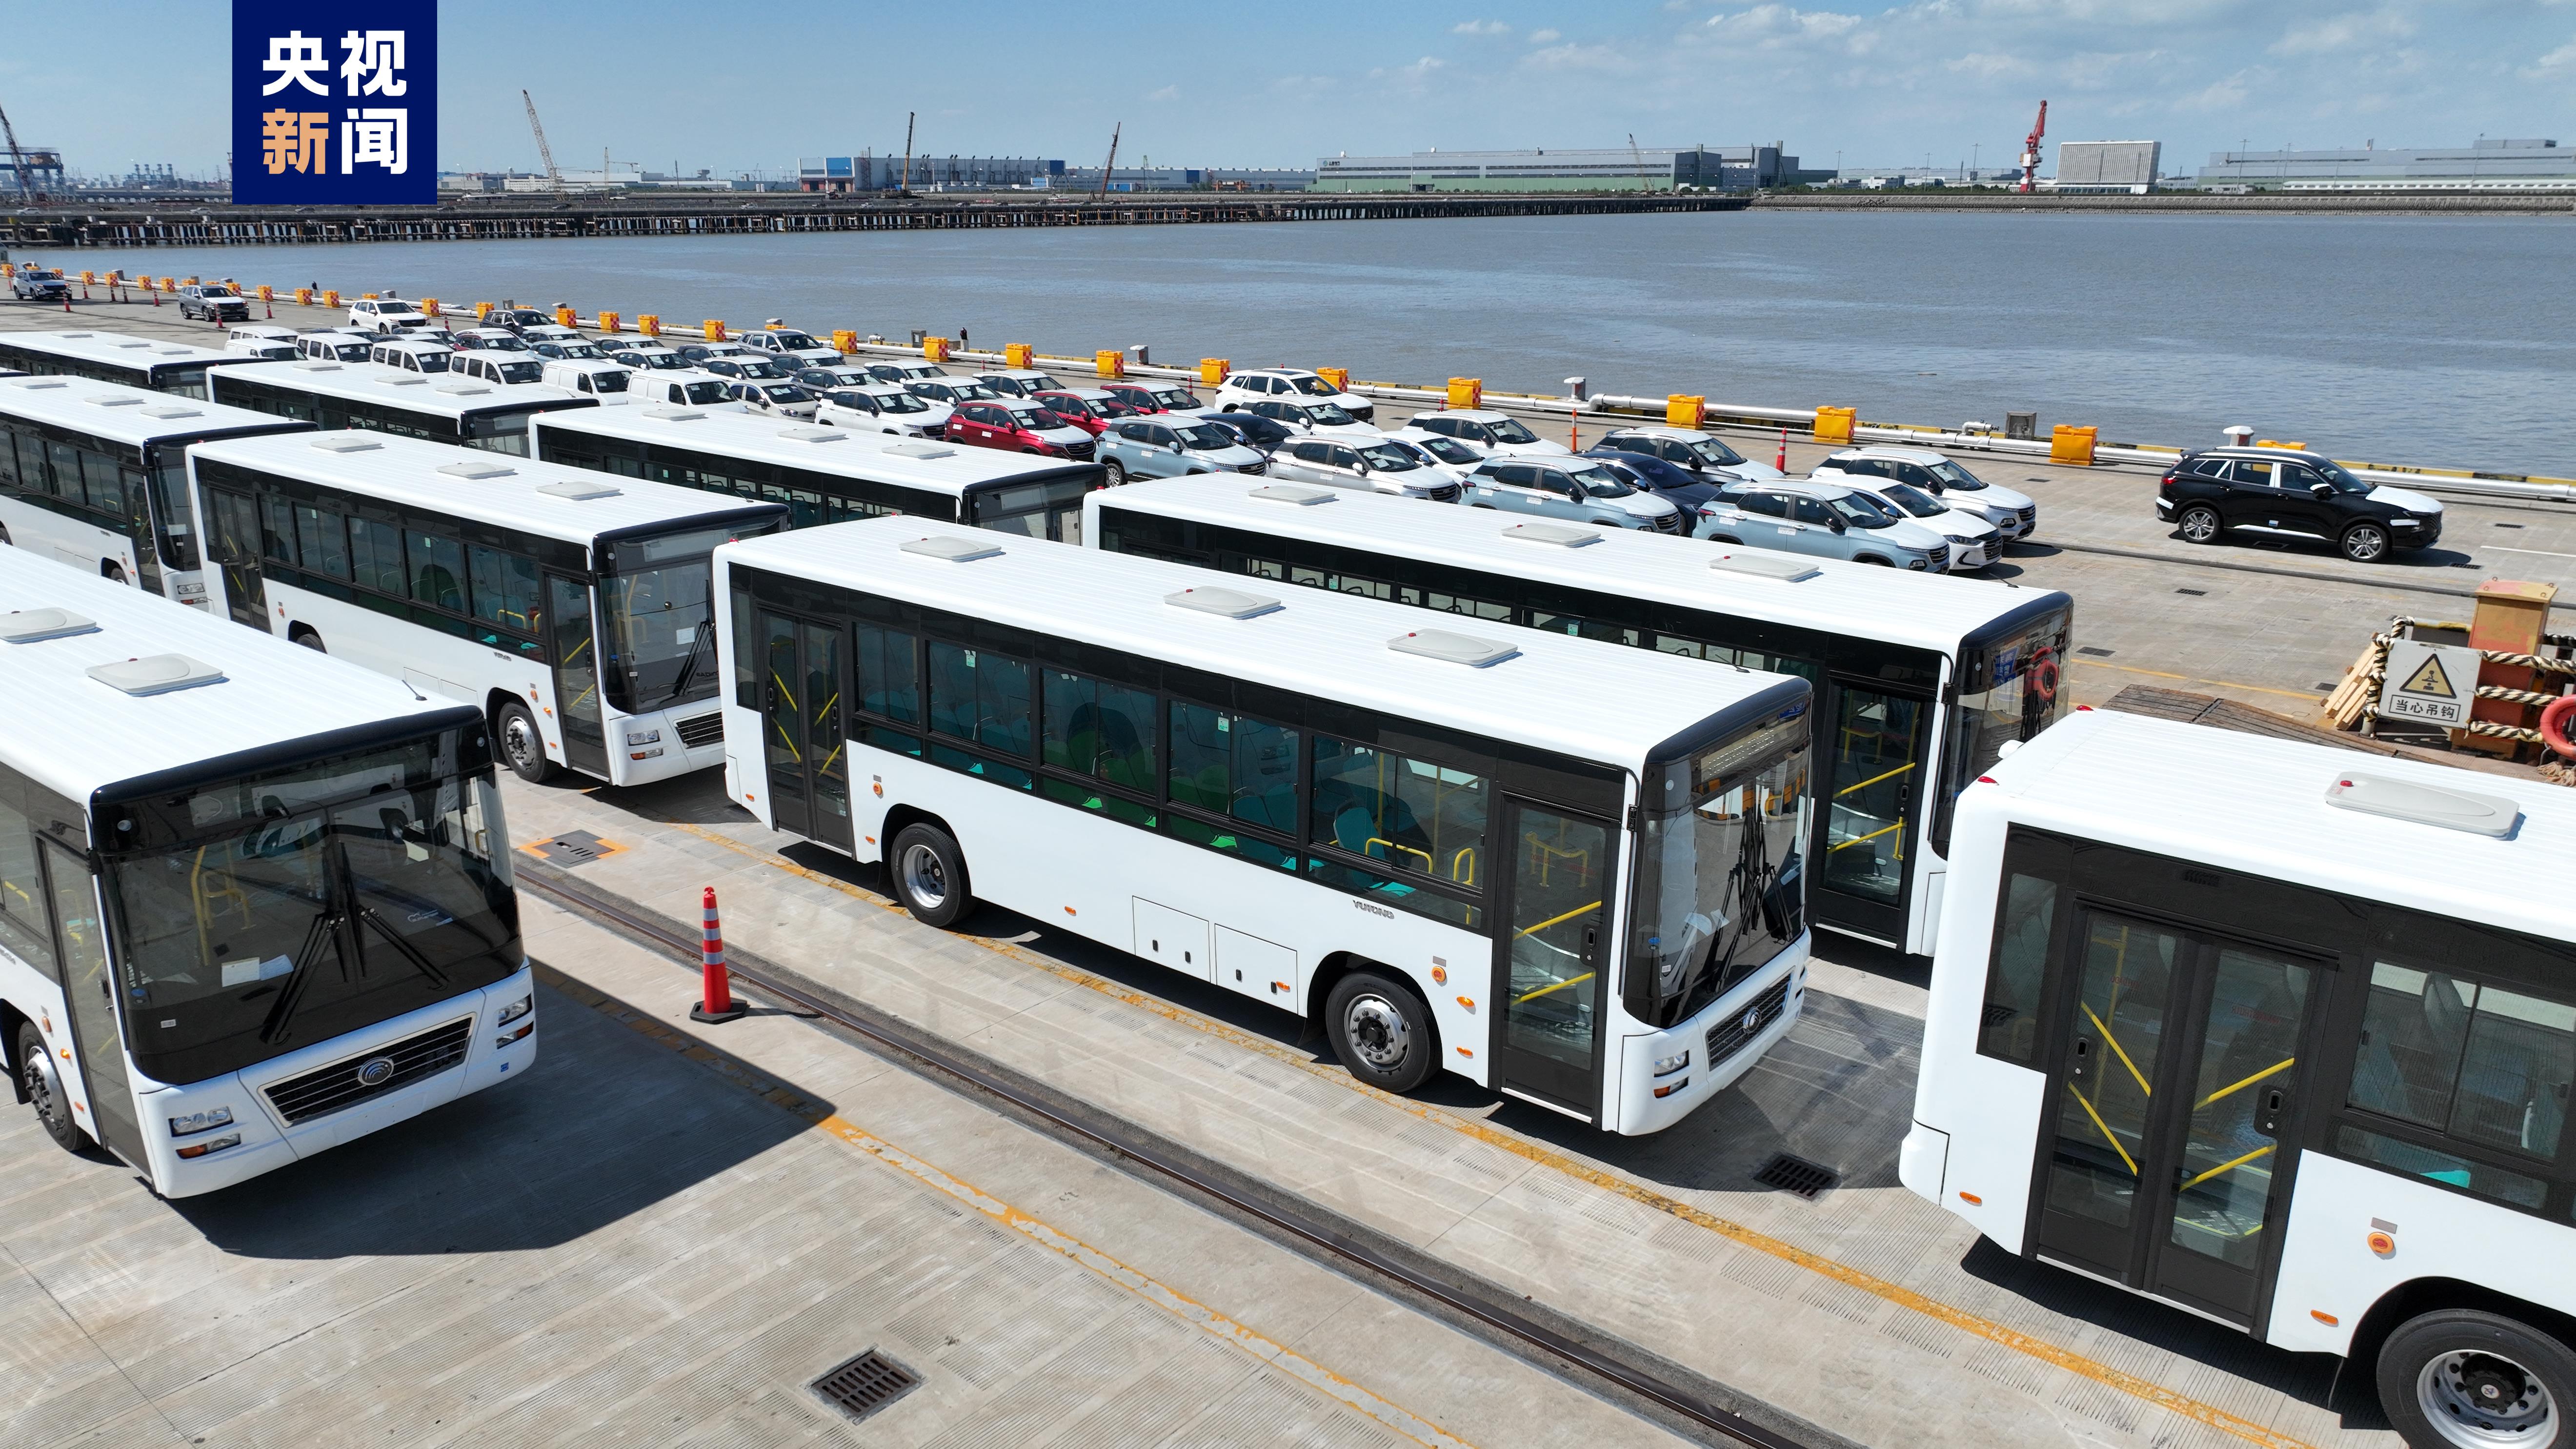 250辆国产大巴装船出口 上海南港码头汽车出口覆盖更多车型